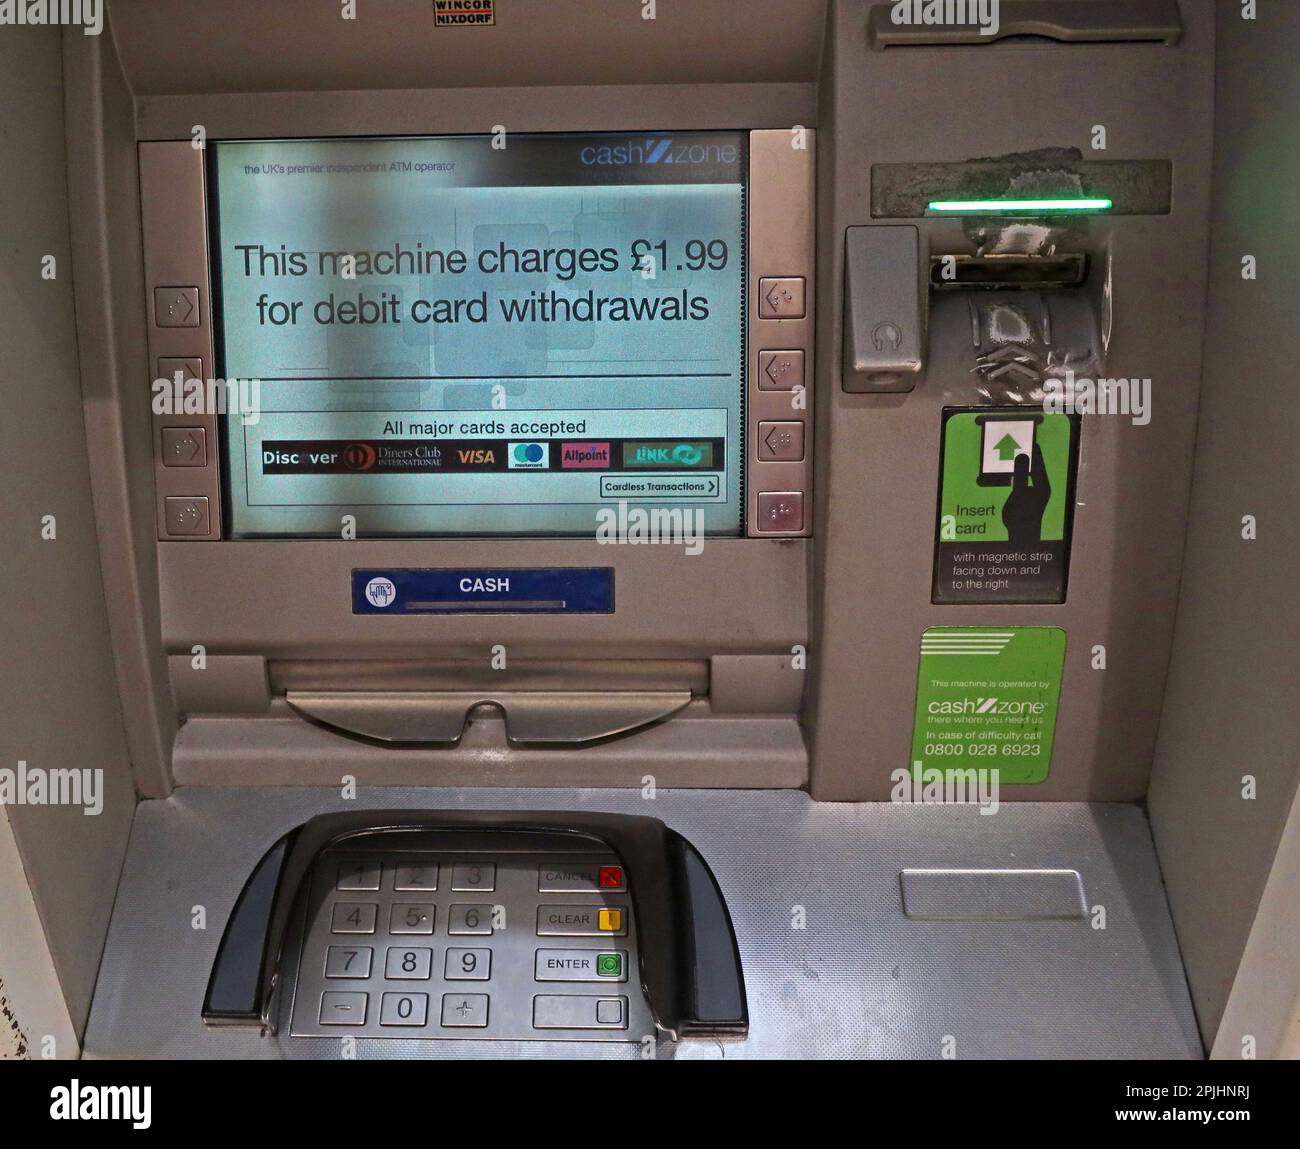 Cashzone ATM - distributeur automatique de billets - distributeur automatique de billets - £1,99 pour retirer de l'argent dans un centre-ville du Royaume-Uni Banque D'Images